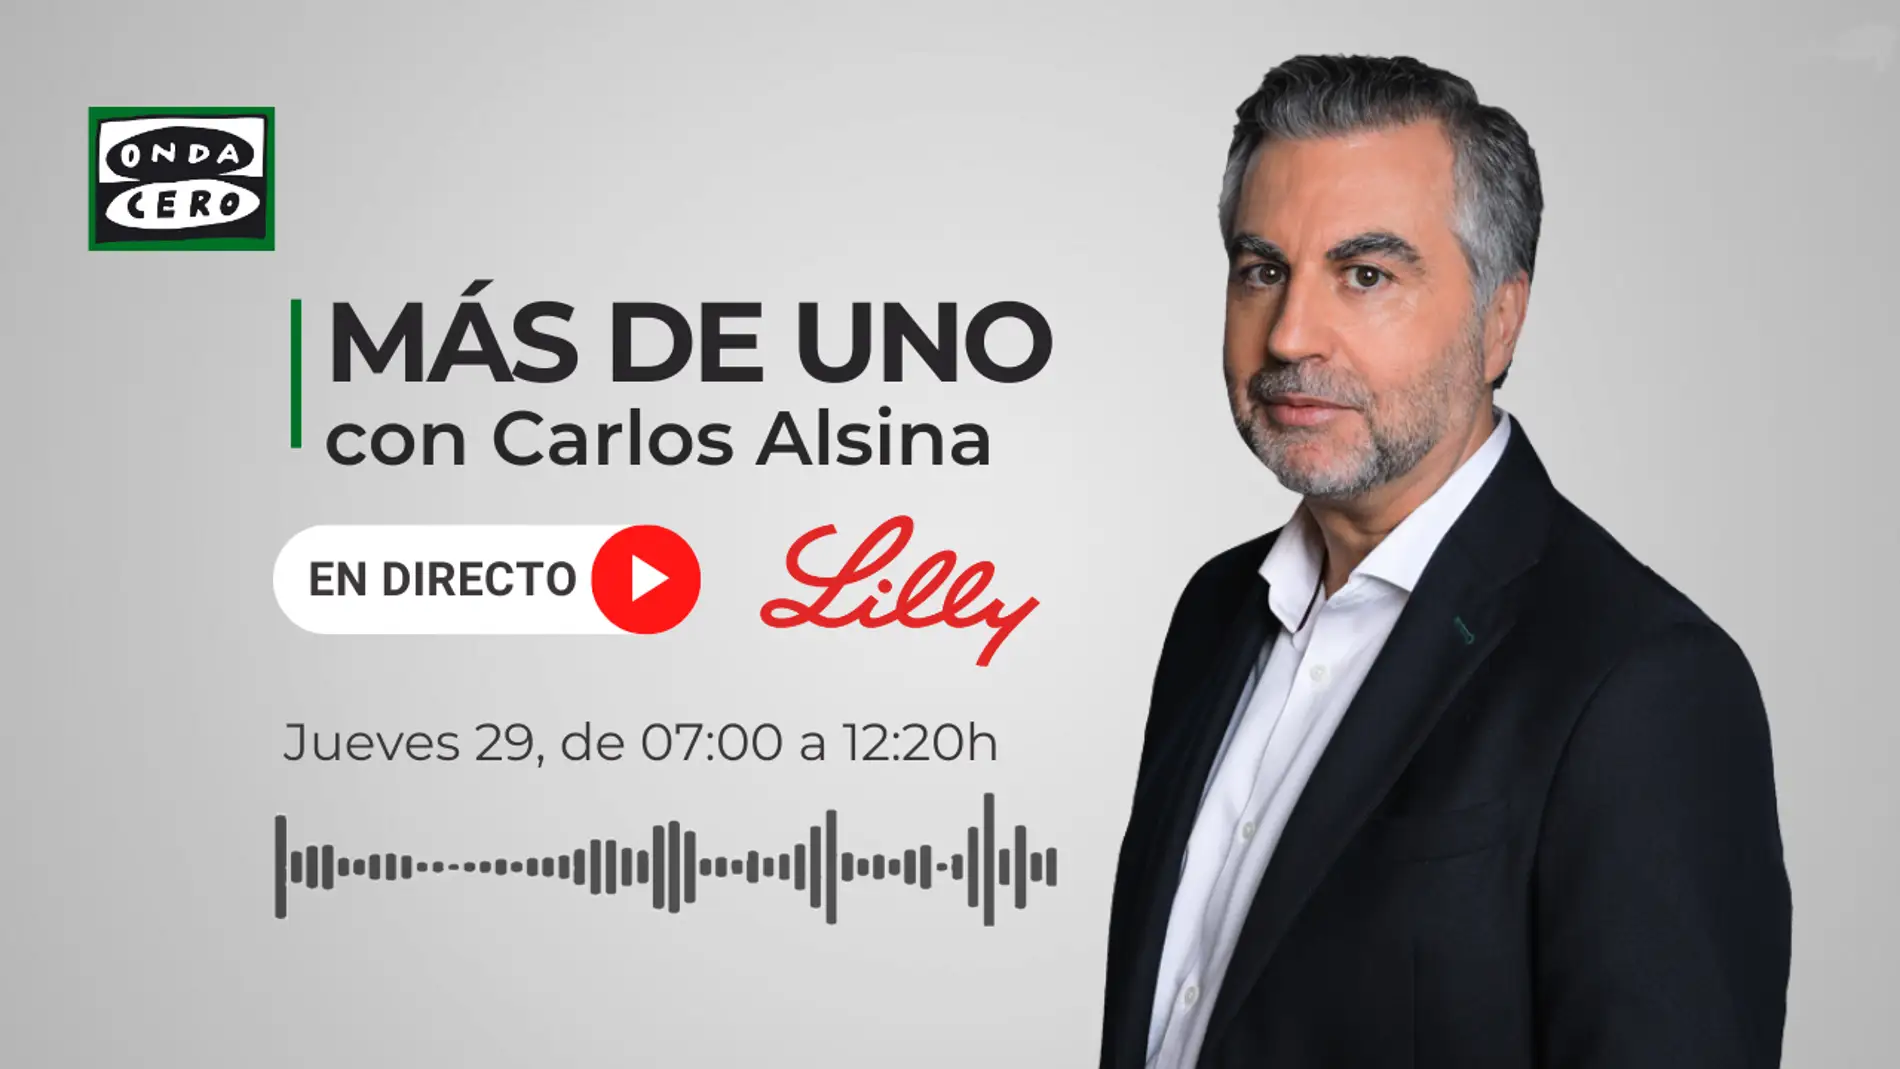 Programa especial de 'Más de uno' con Carlos Alsina desde la sede de Lilly